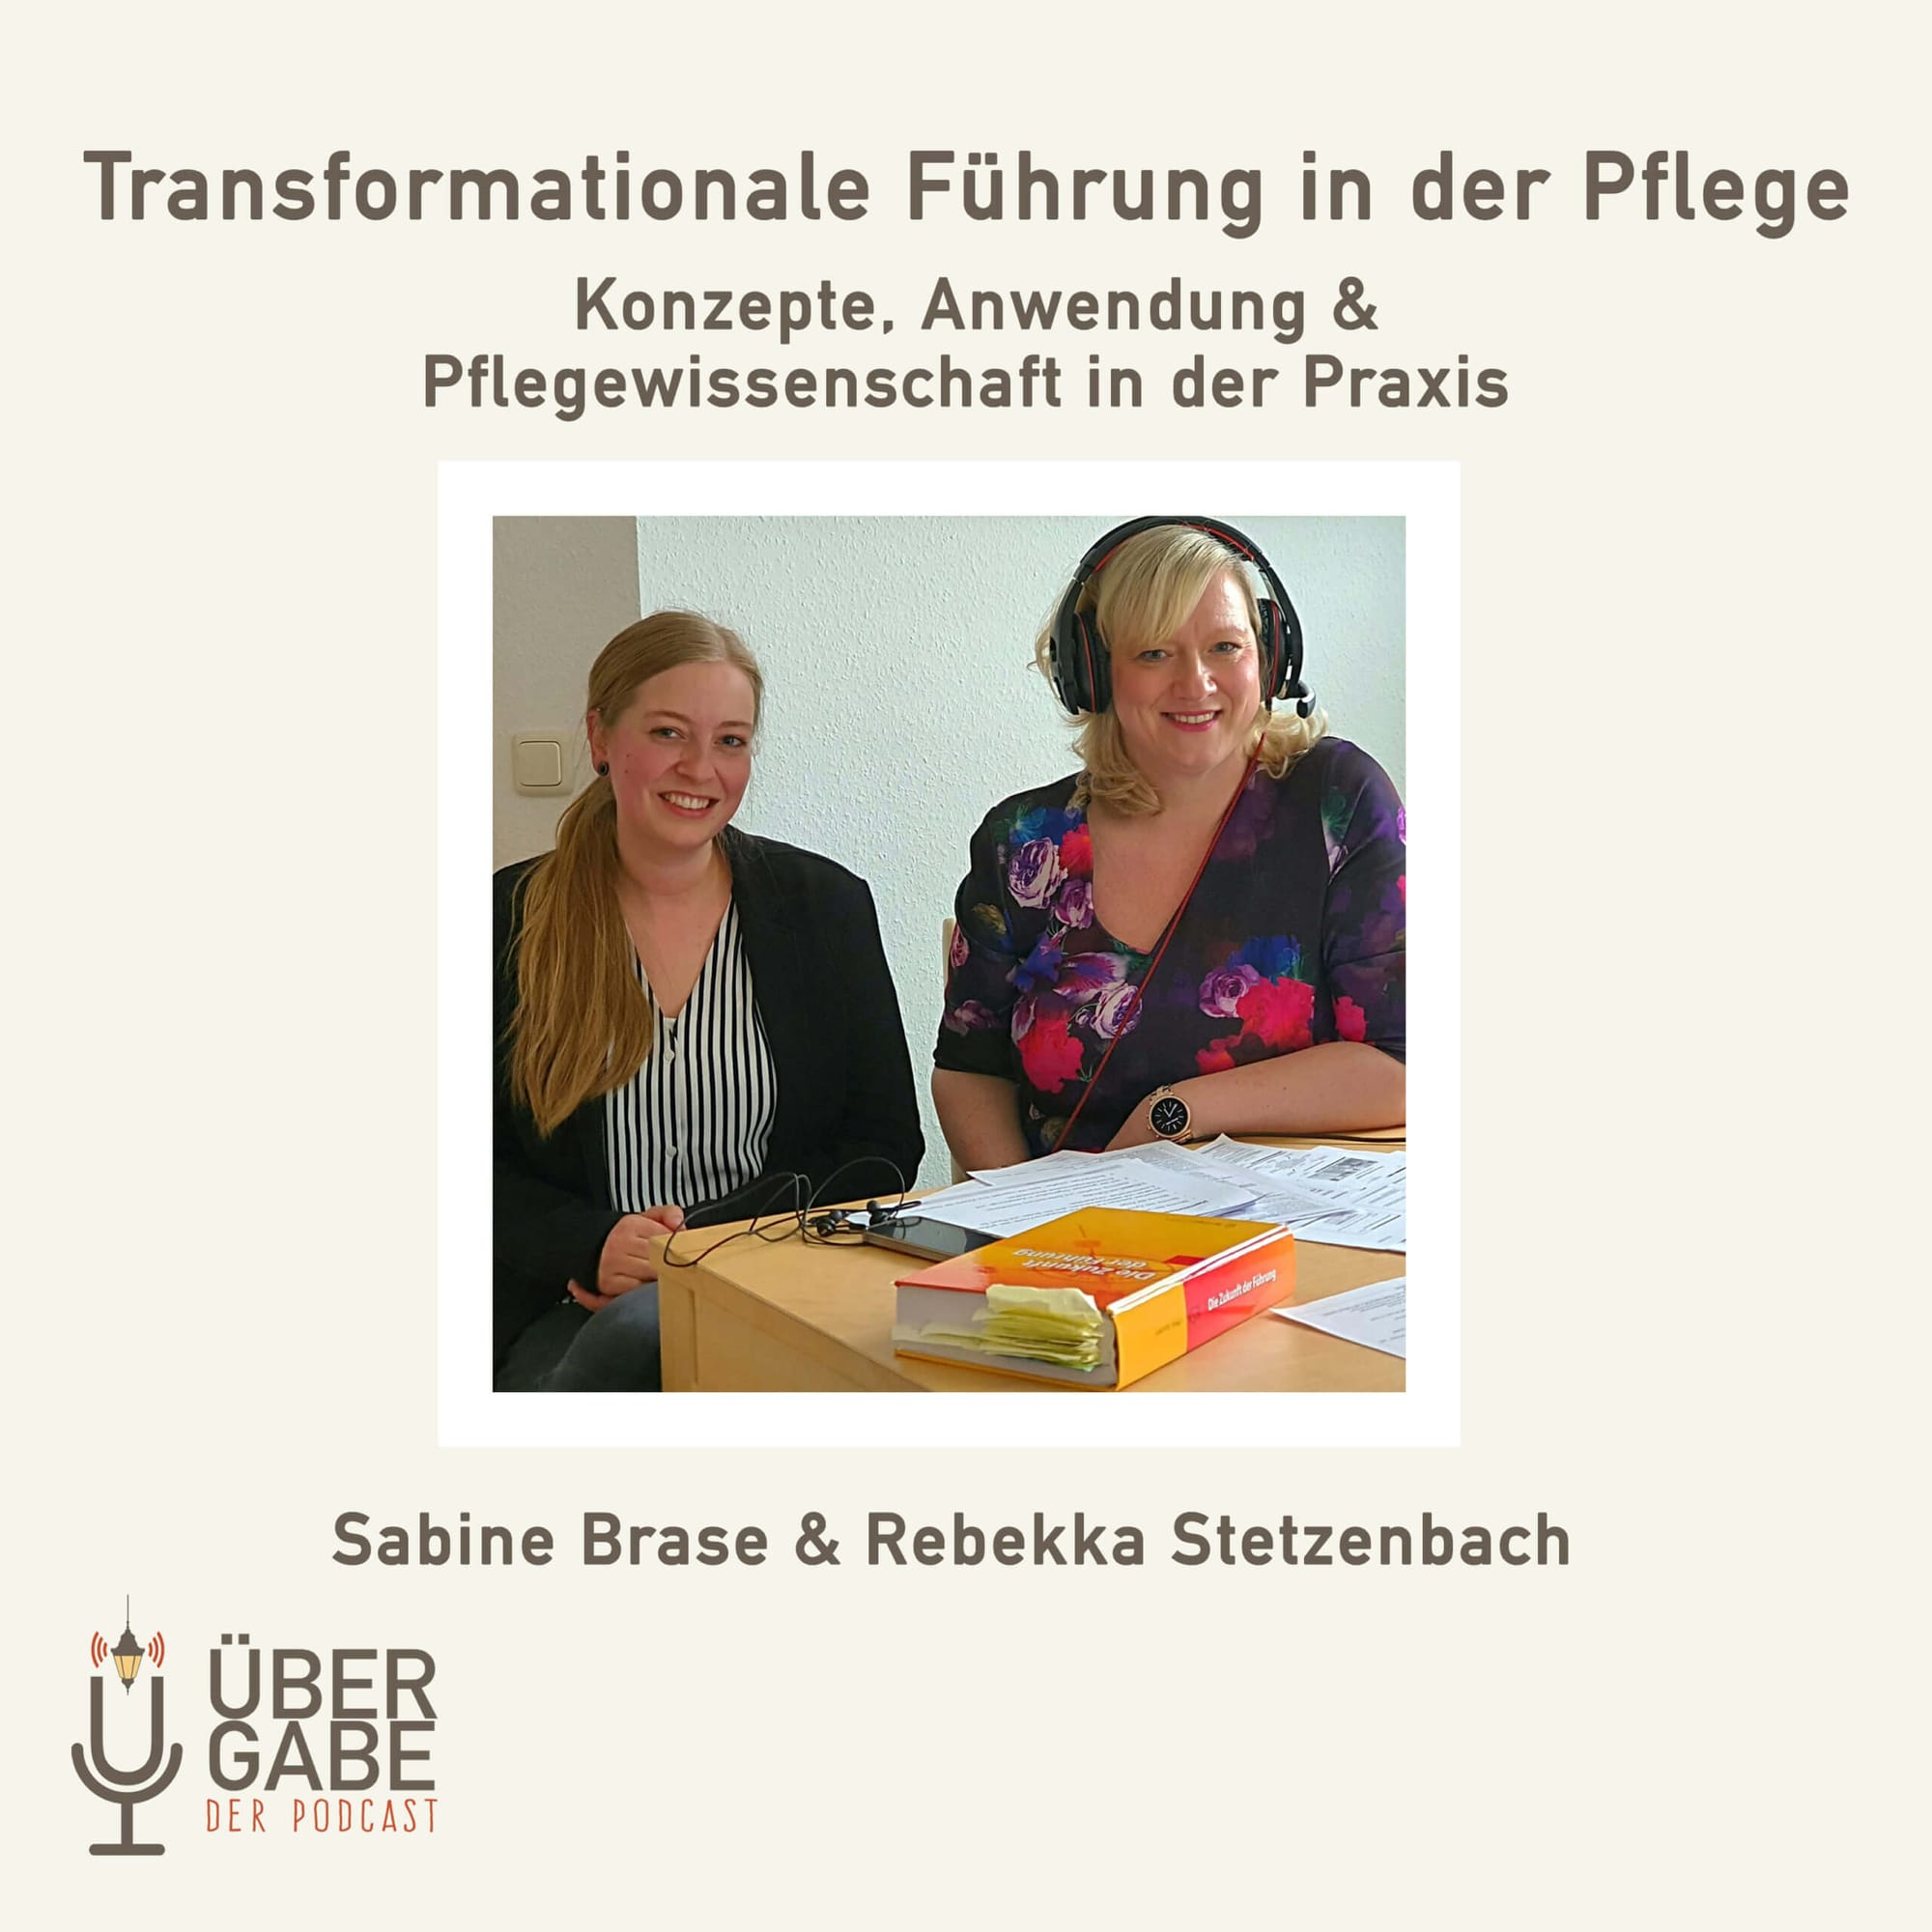 Transformationale Führung & Pflegewissenschaft in der Praxis (Interview mit Sabine Brase & Rebekka Stetzenbach)